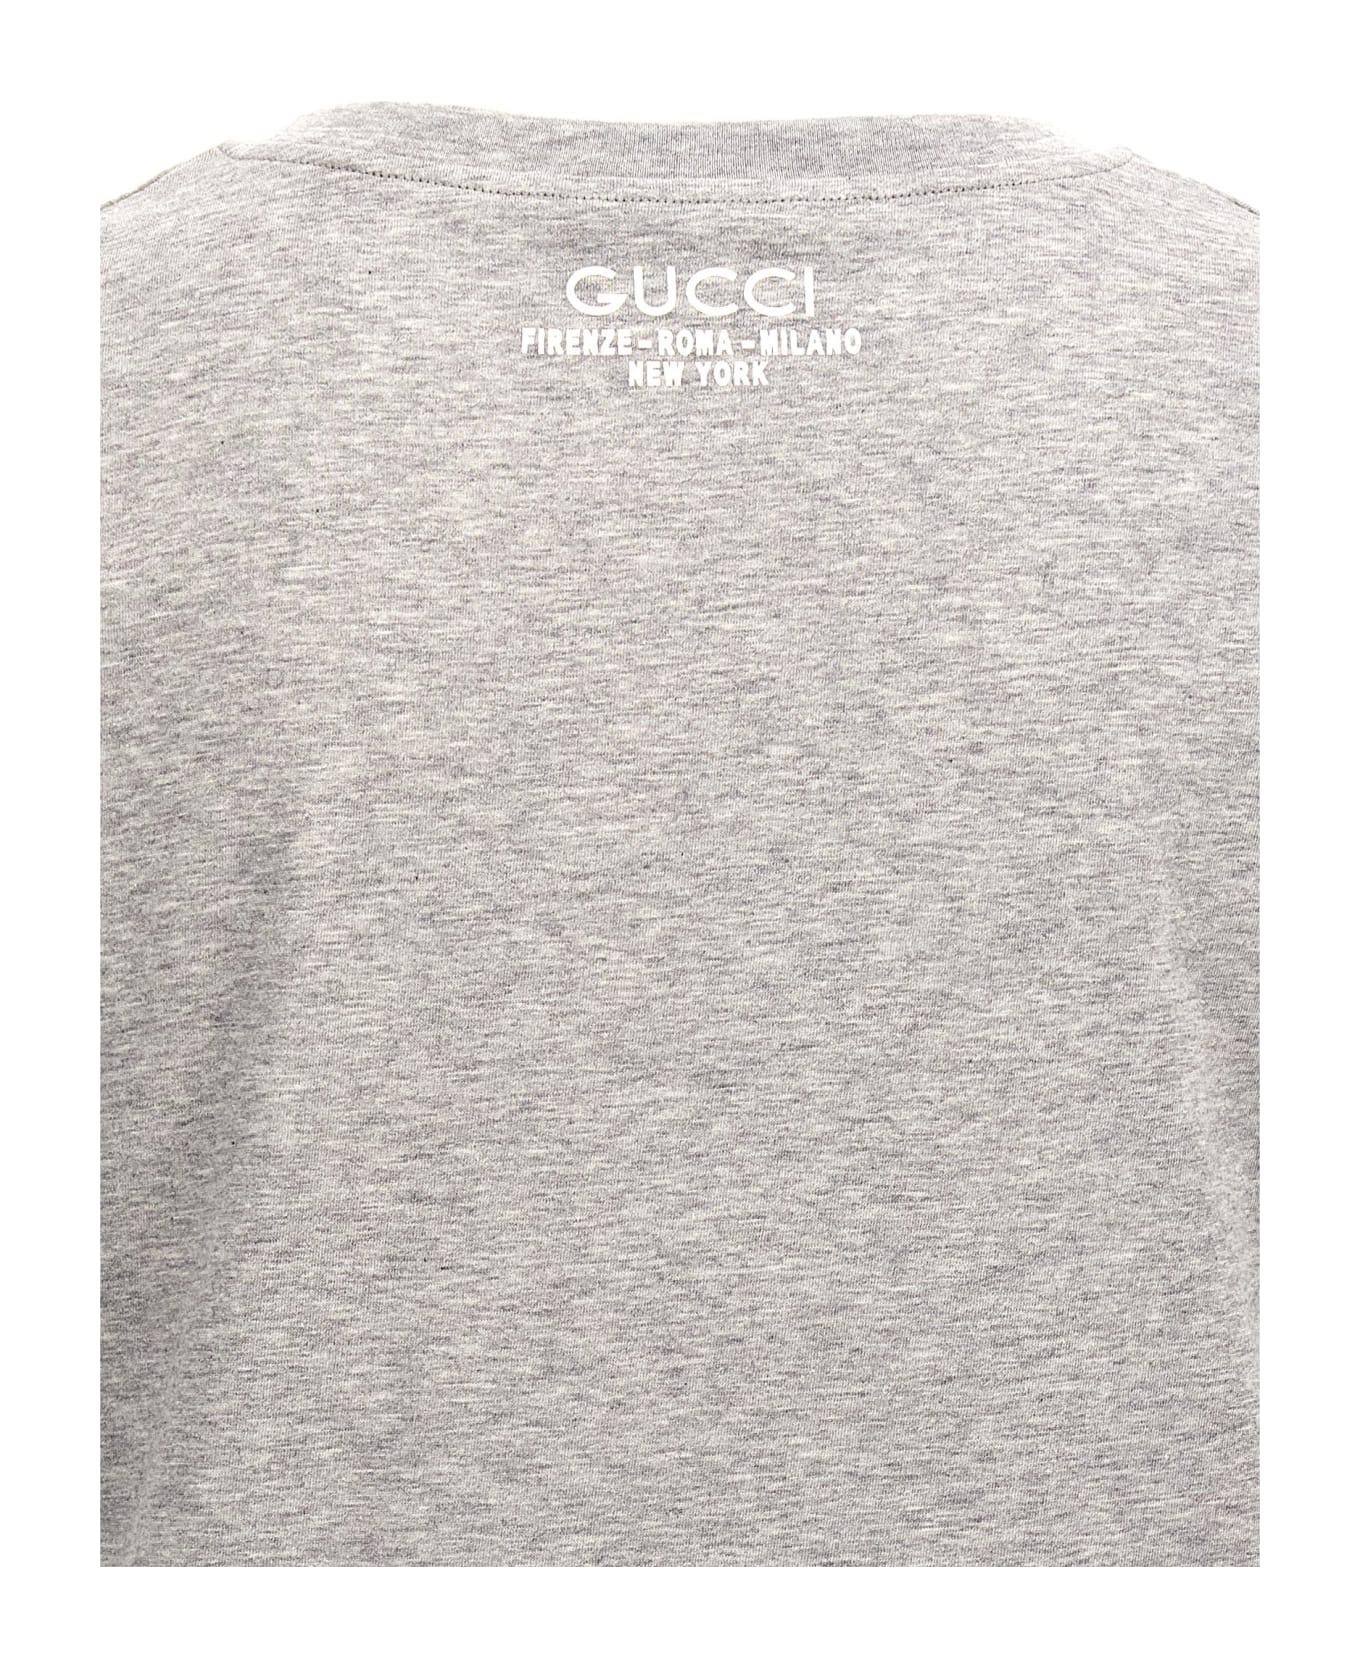 Gucci V-neck T-shirt - Grey Melange